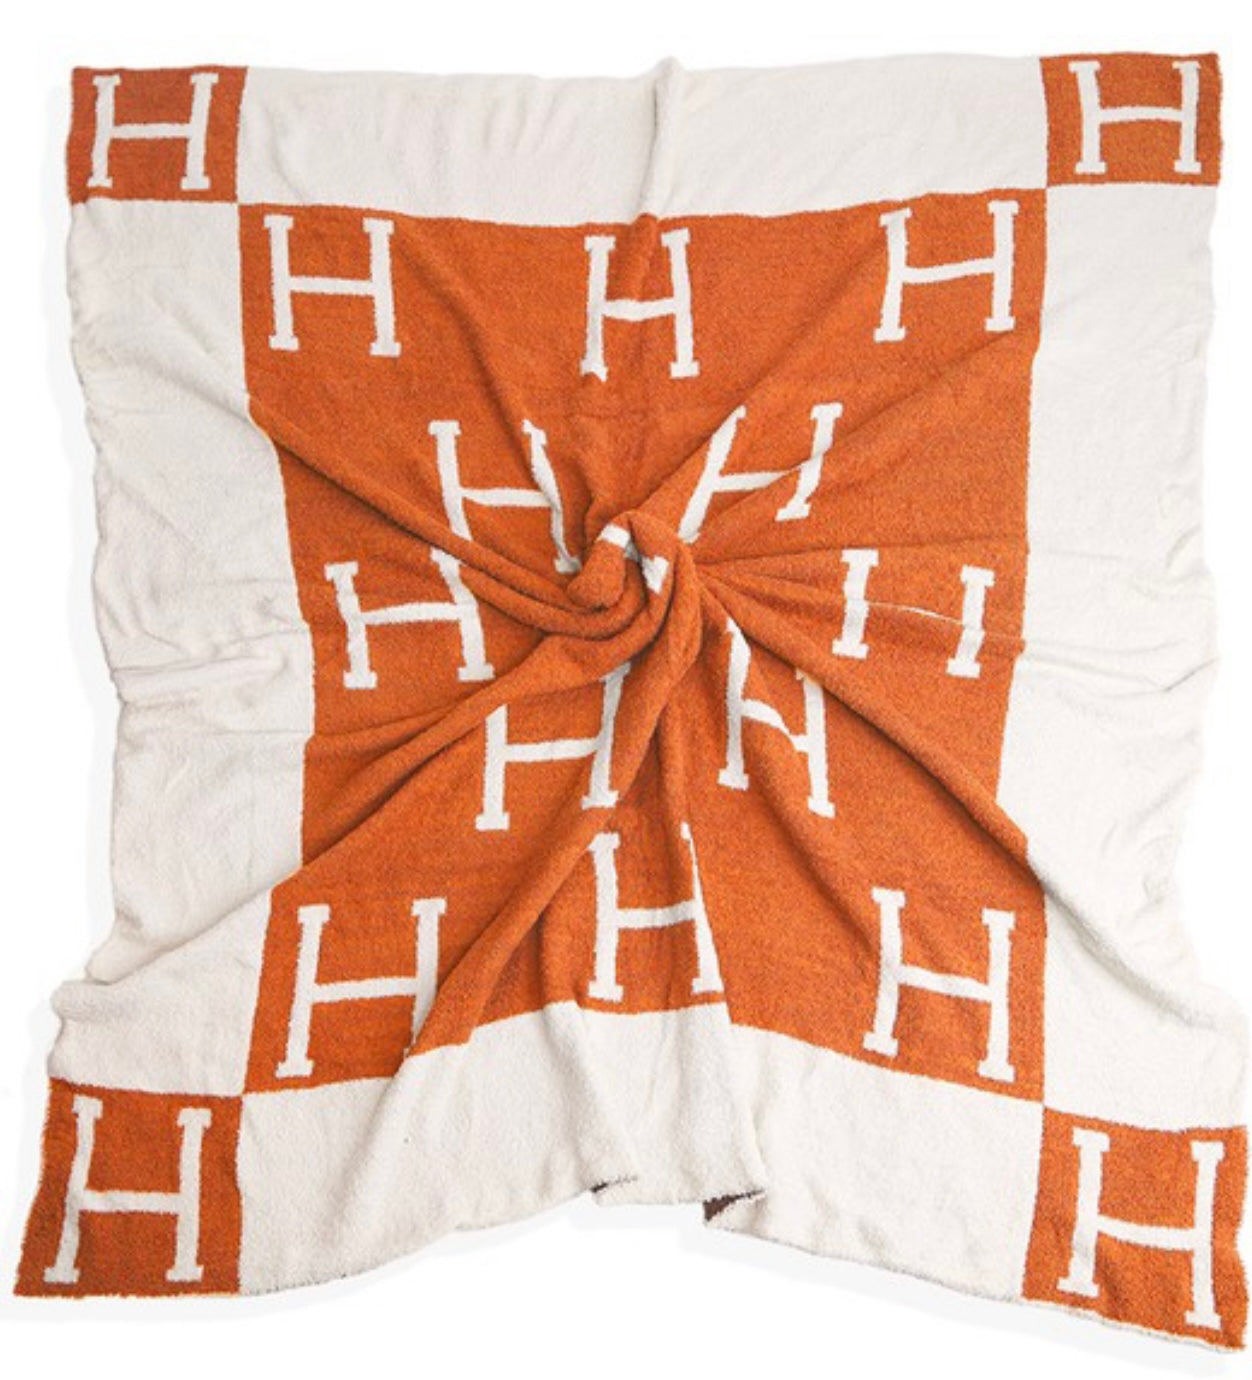 Luxe “H” Blanket